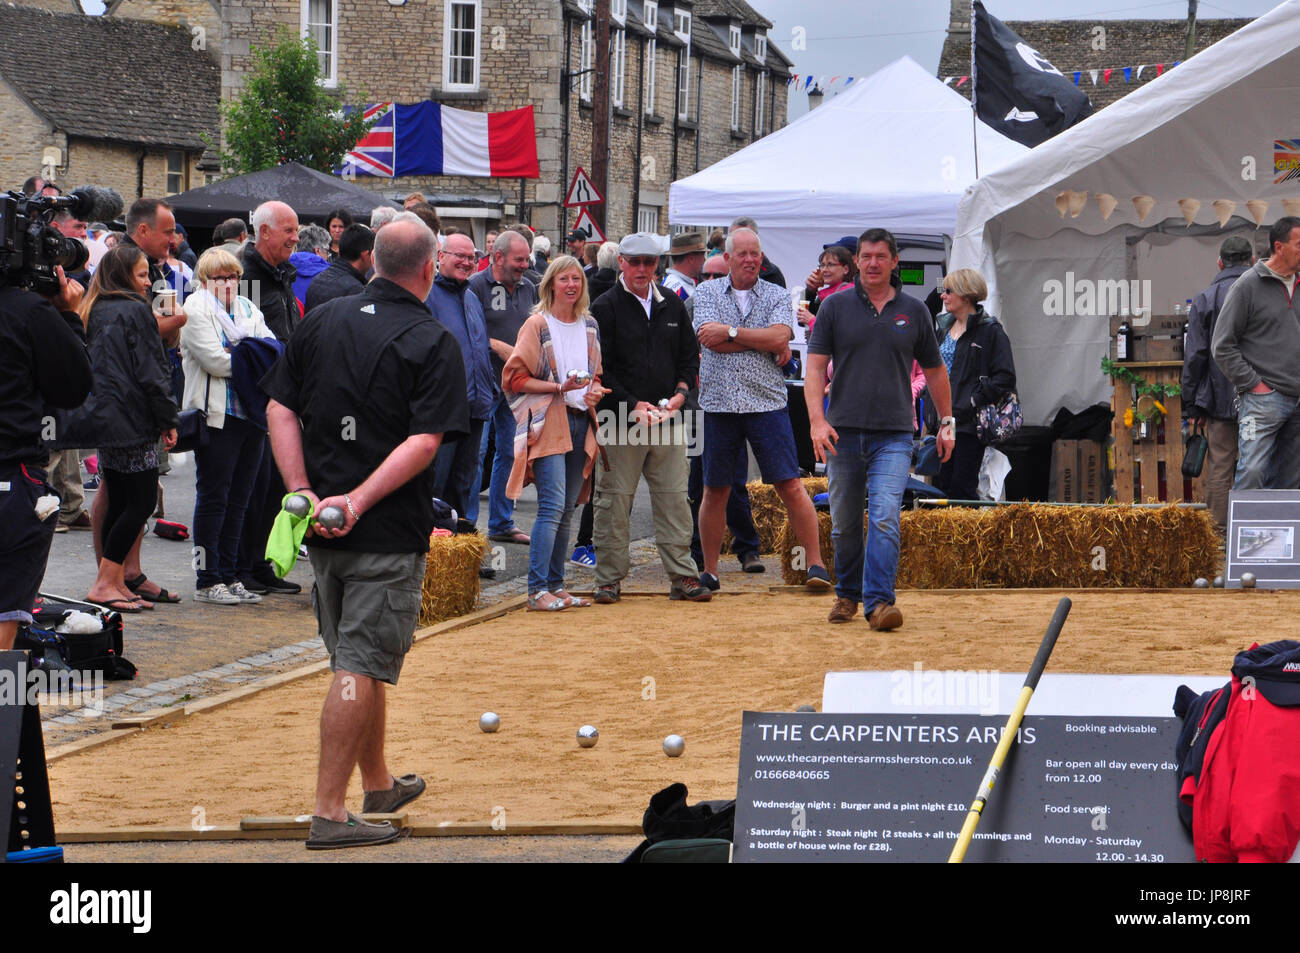 Boule-Wettbewerb, jährliche Veranstaltung im Sherston, UK. Interessiert Spieler hart zu konzentrieren. Stockfoto